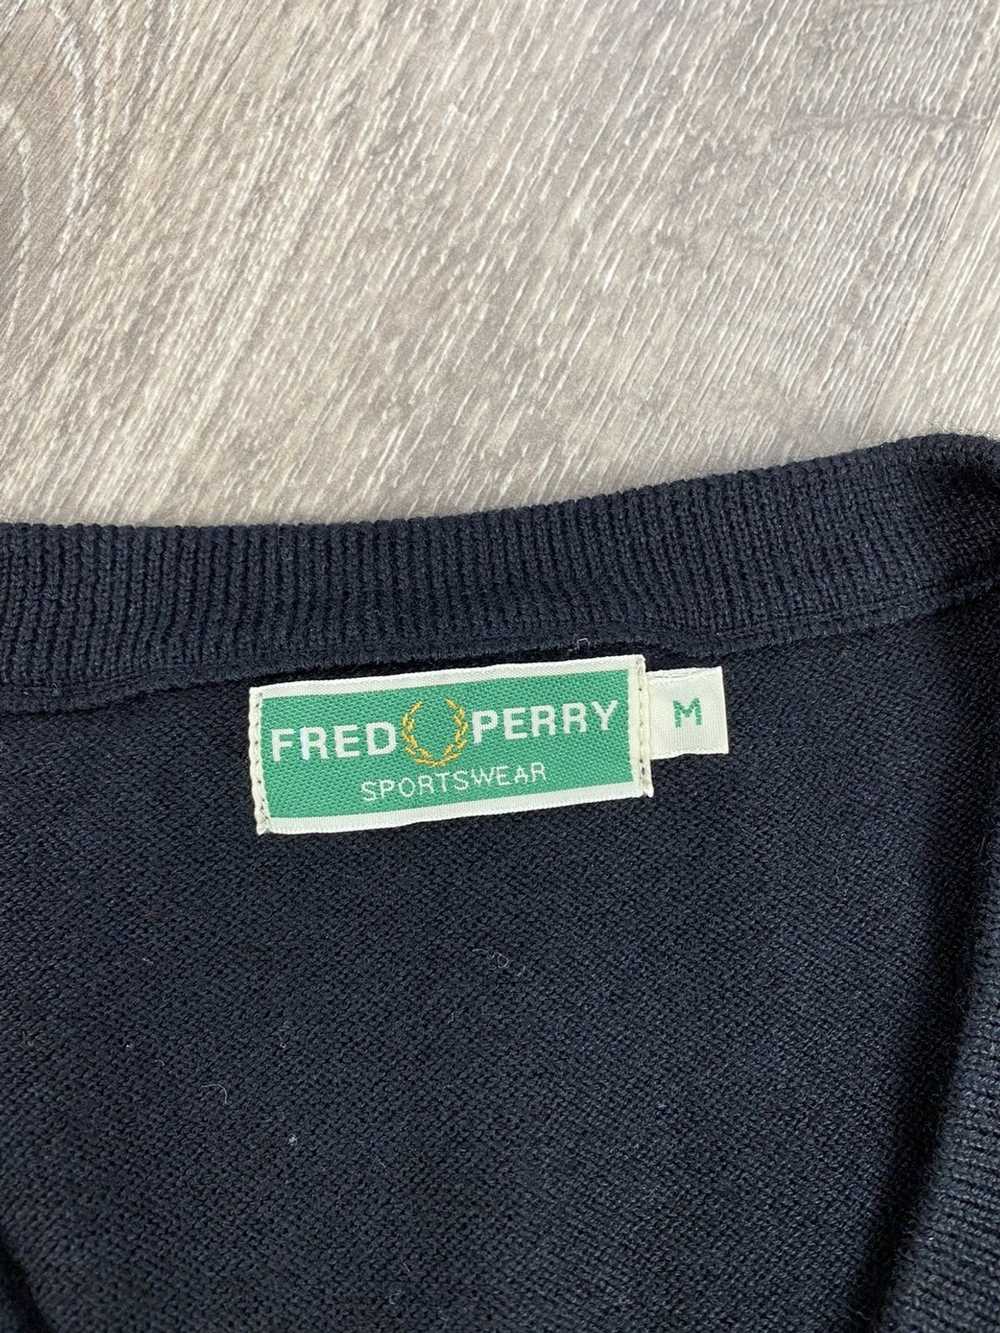 Fred Perry × Vintage Mens Vintage Free Perry Wool… - image 3